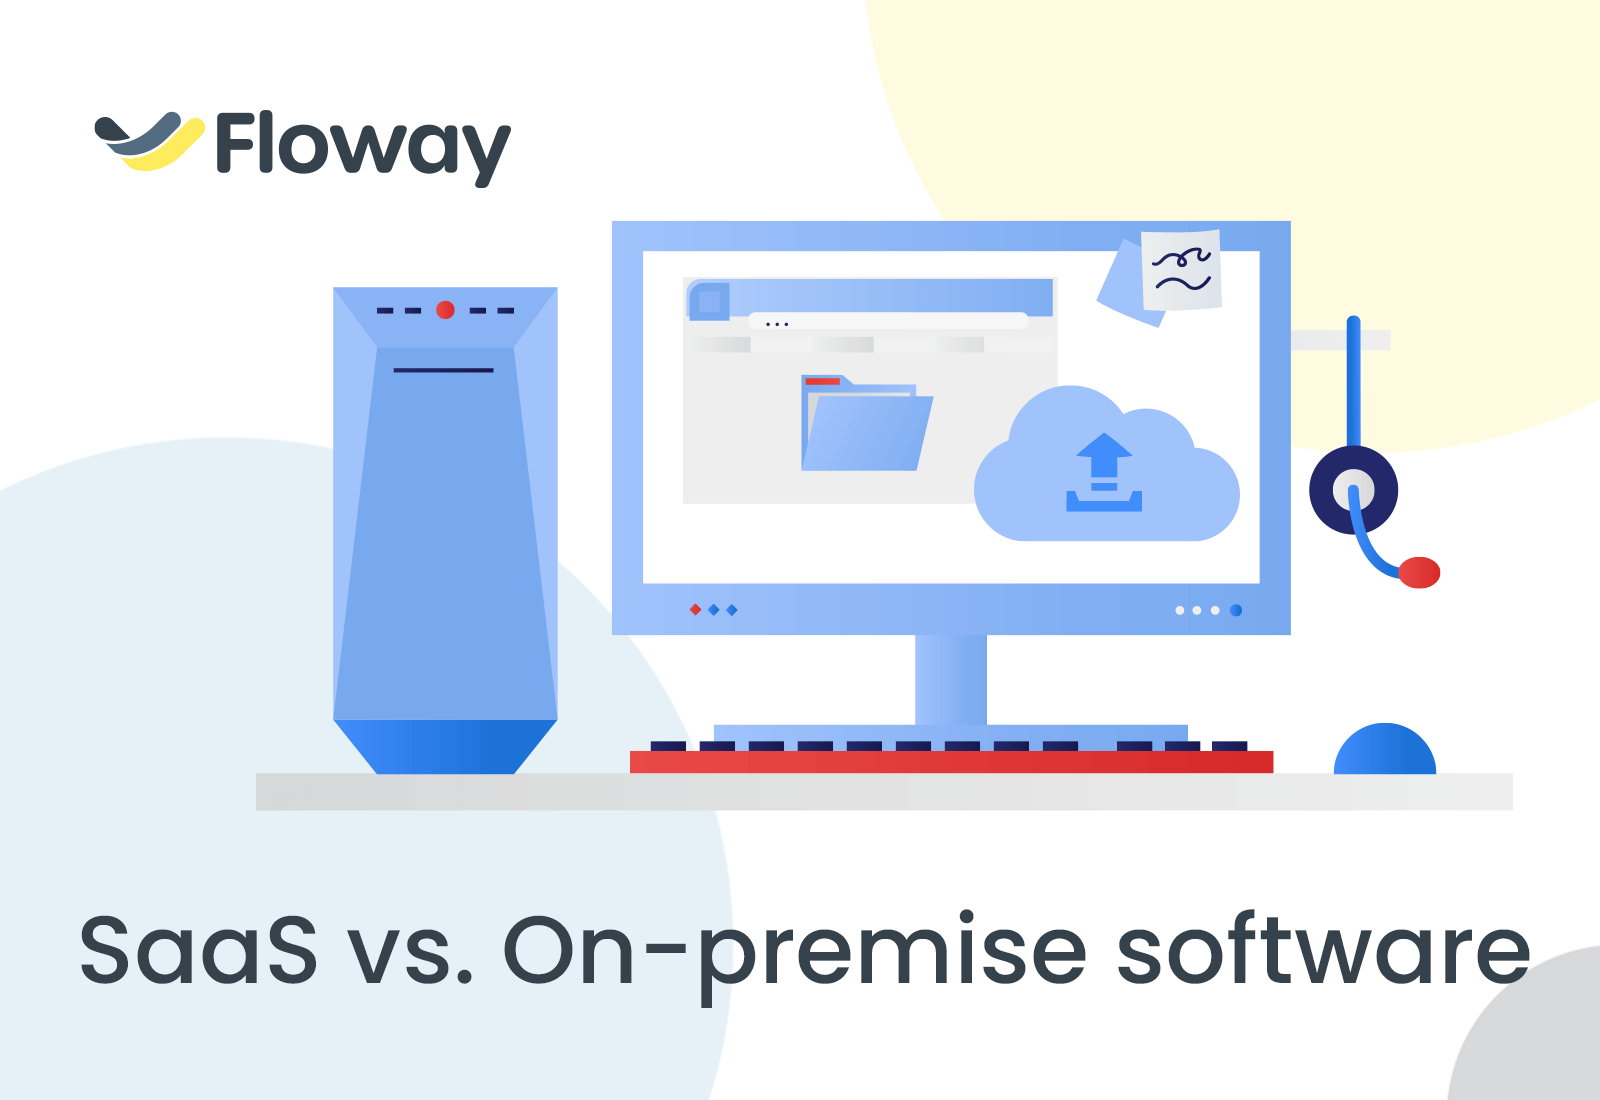 Blog floway workflow - SaaS vs. On-premise software